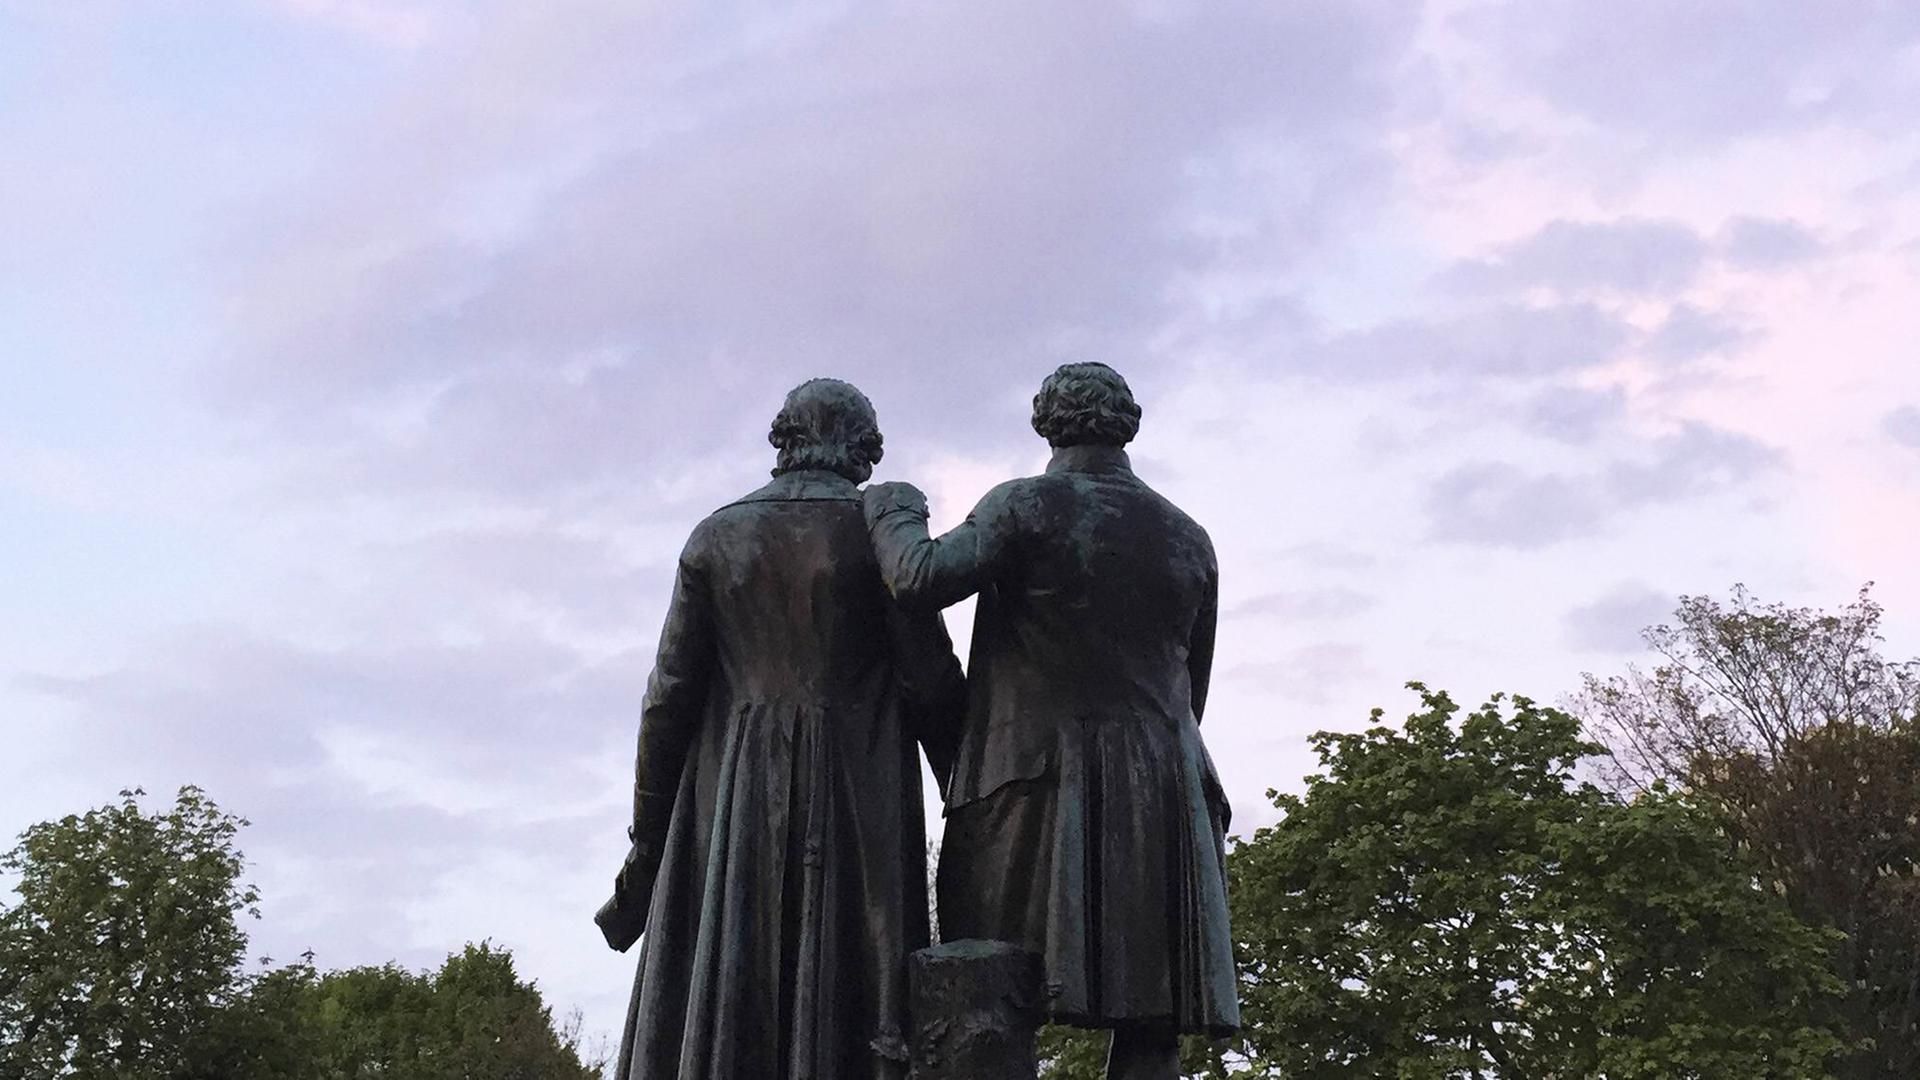 Das Goethe und Schiller Denkmal in Weimar, eine Figur legt die Hand auf die Schulter der anderen Figur.